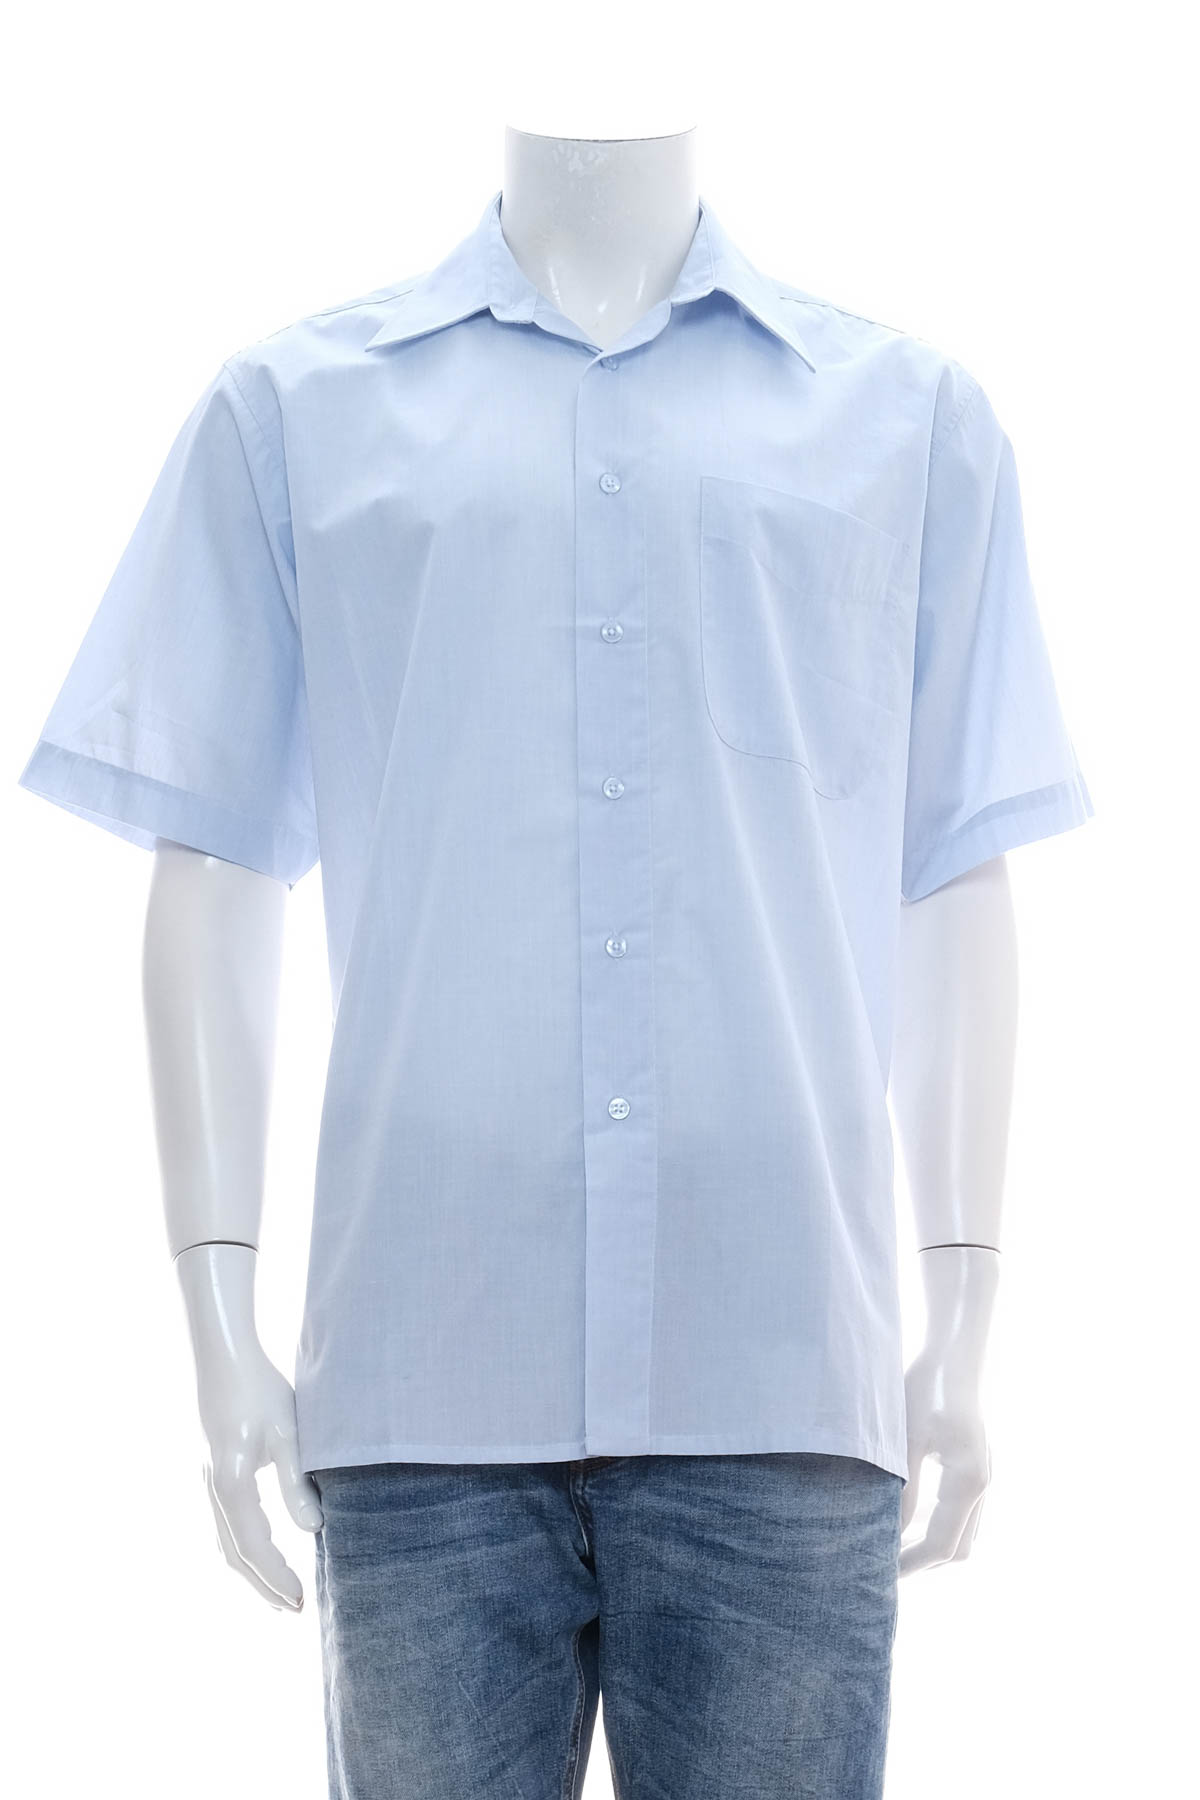 Ανδρικό πουκάμισο - Classical Clothes Company - 0